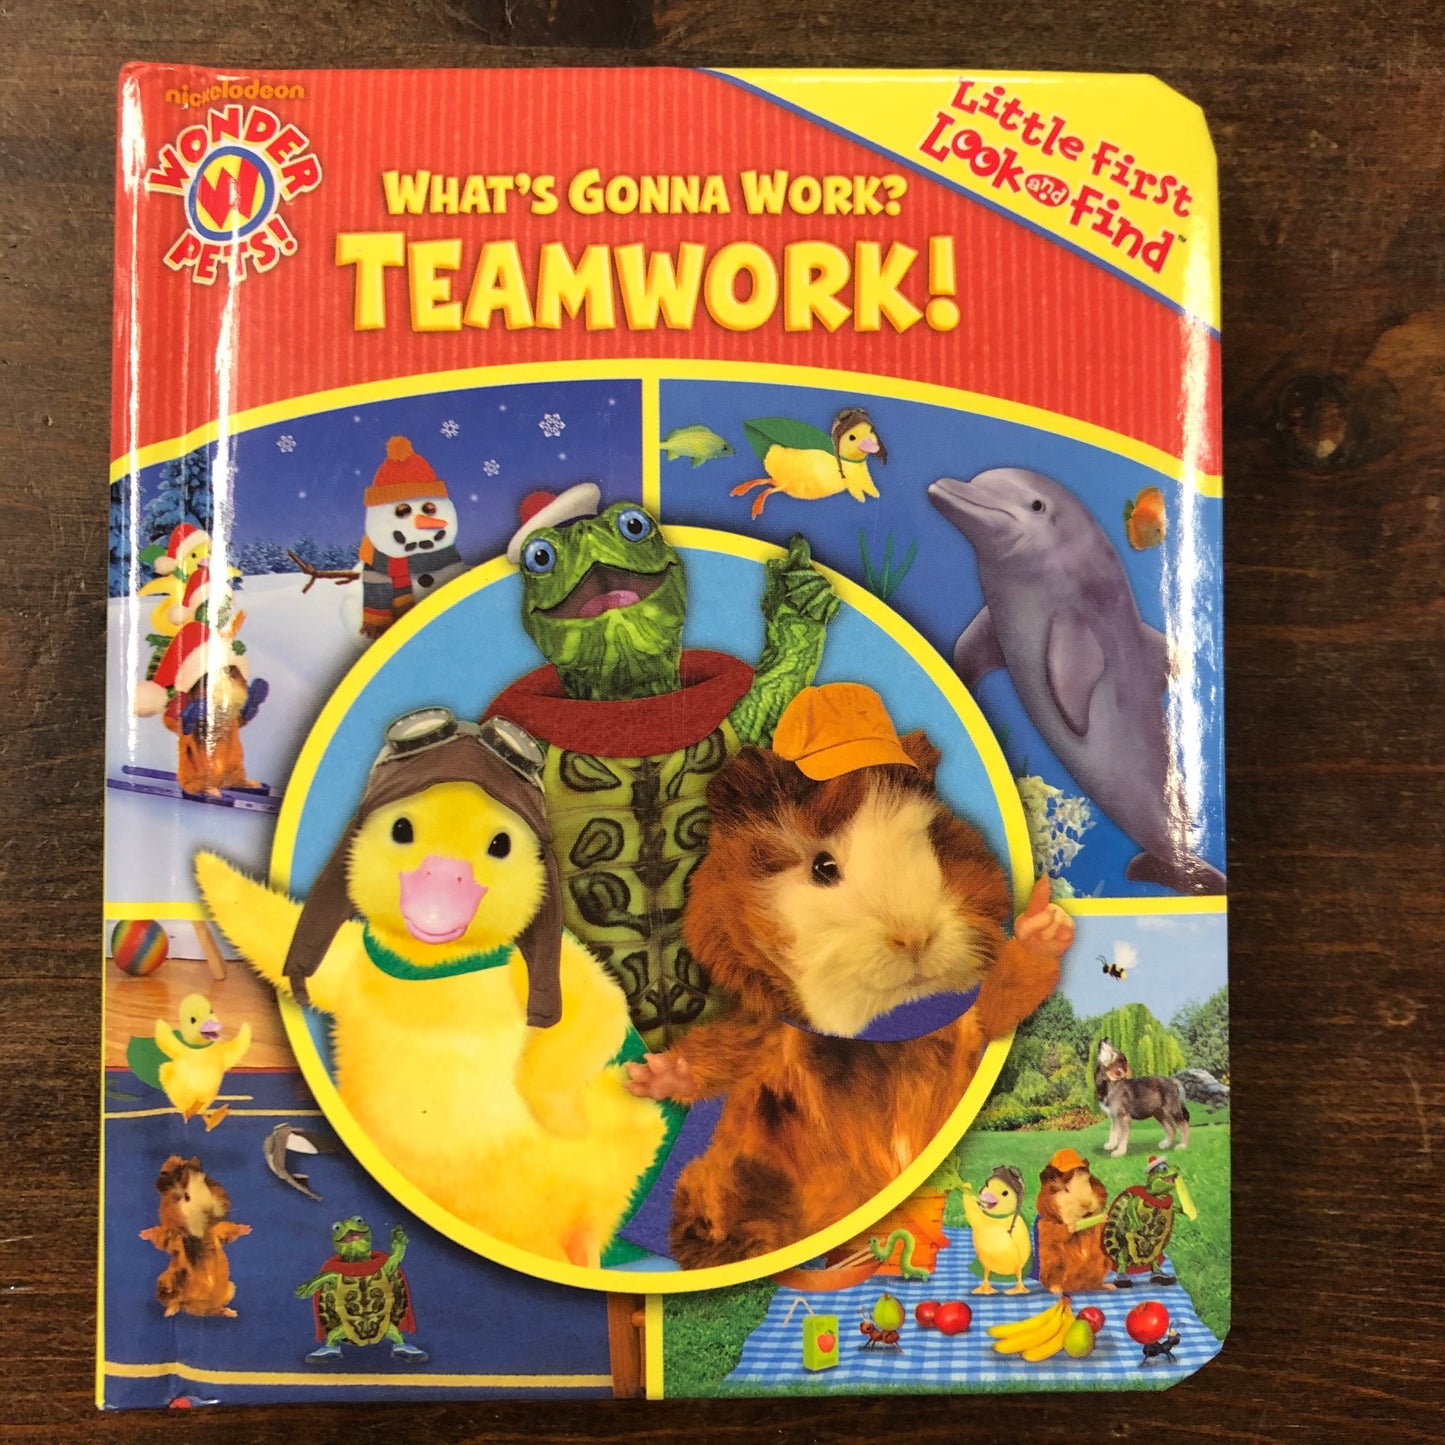 What's Gonna Work? Teamwork!